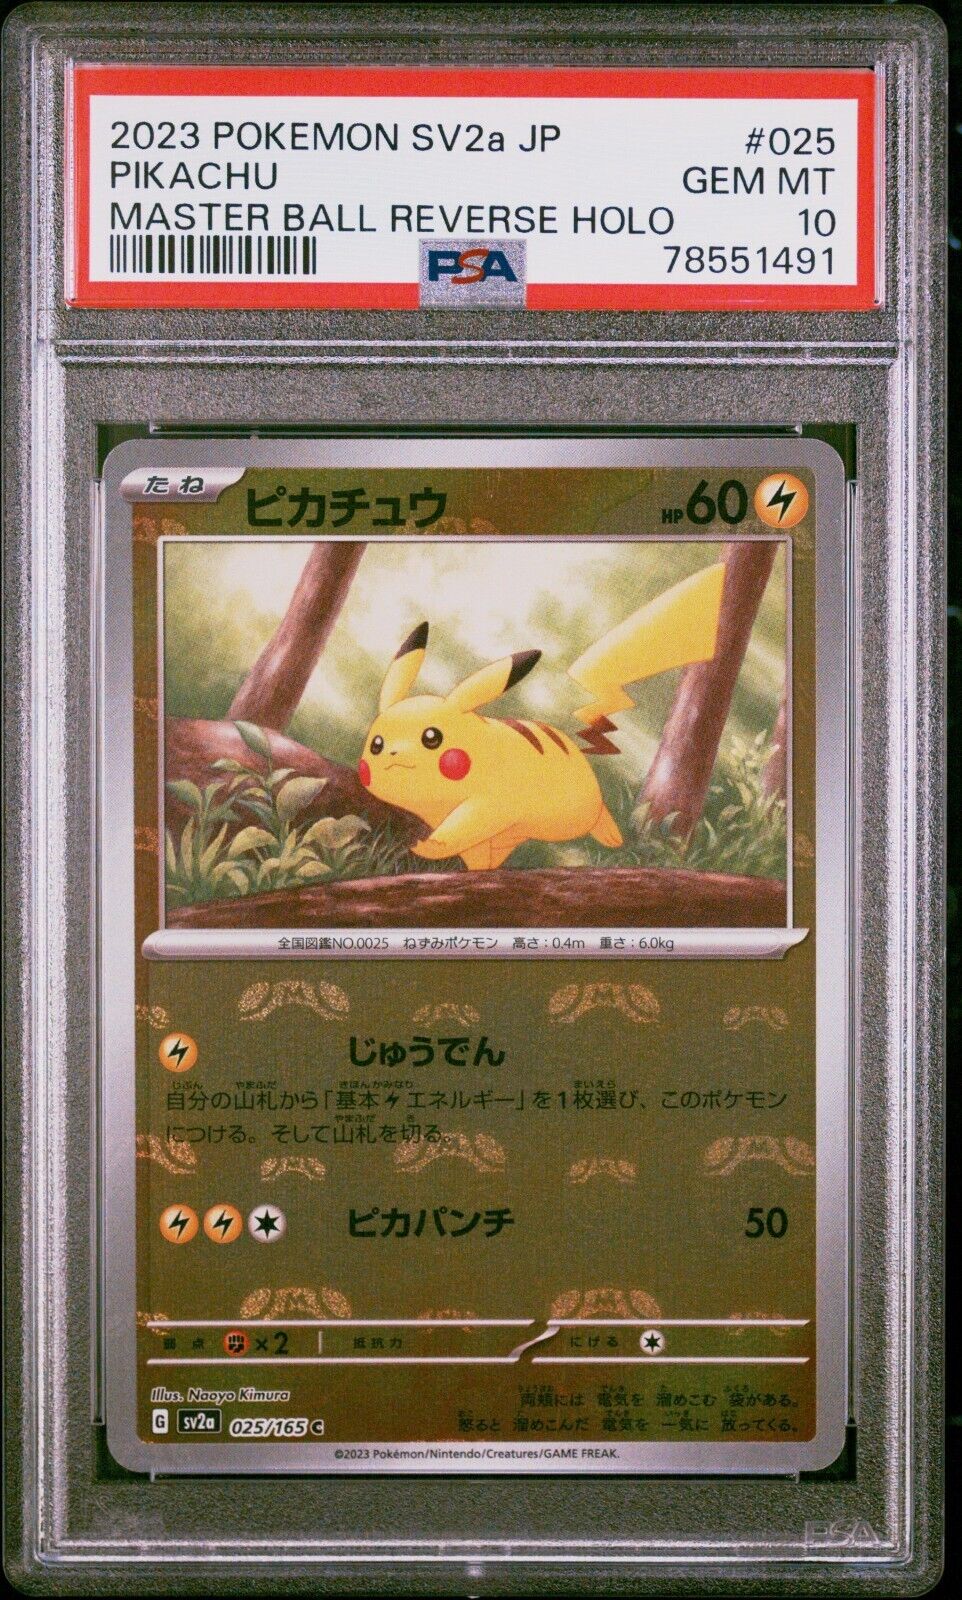 Pokemon PIKACHU PSA10 MASTER BALL REVERSE HOLO SV2a 025165 Japonaise JAP 151 JP